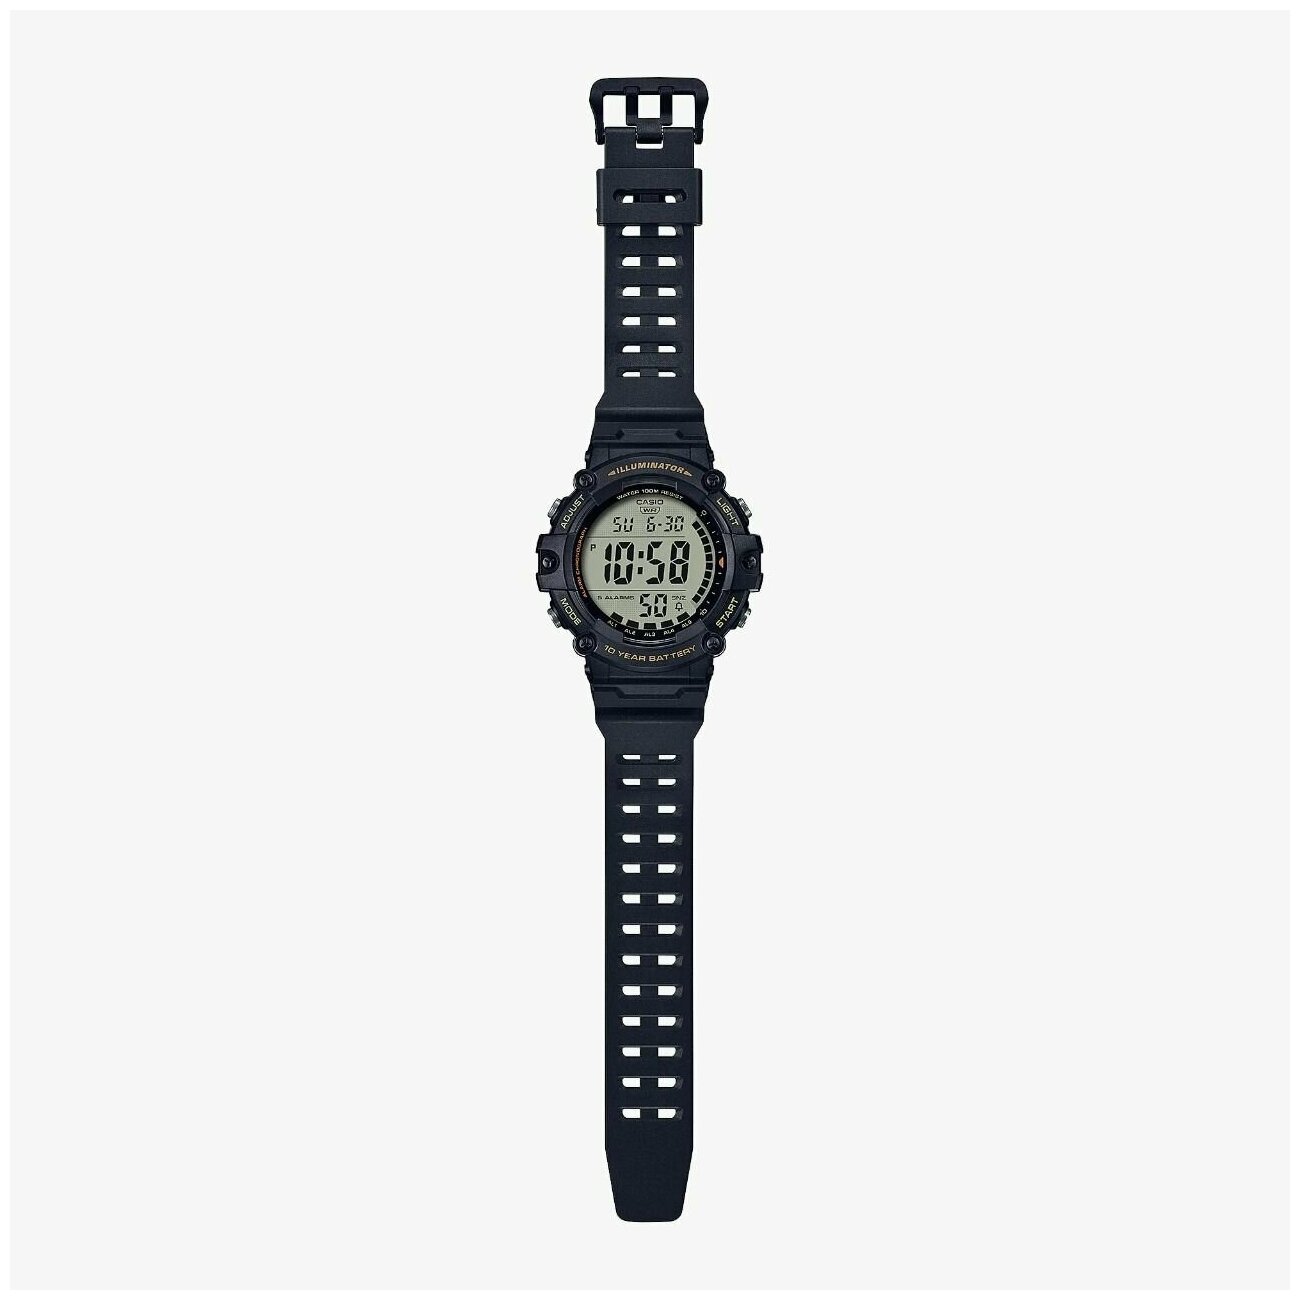 Наручные часы CASIO Collection AE-1500WHX-1A